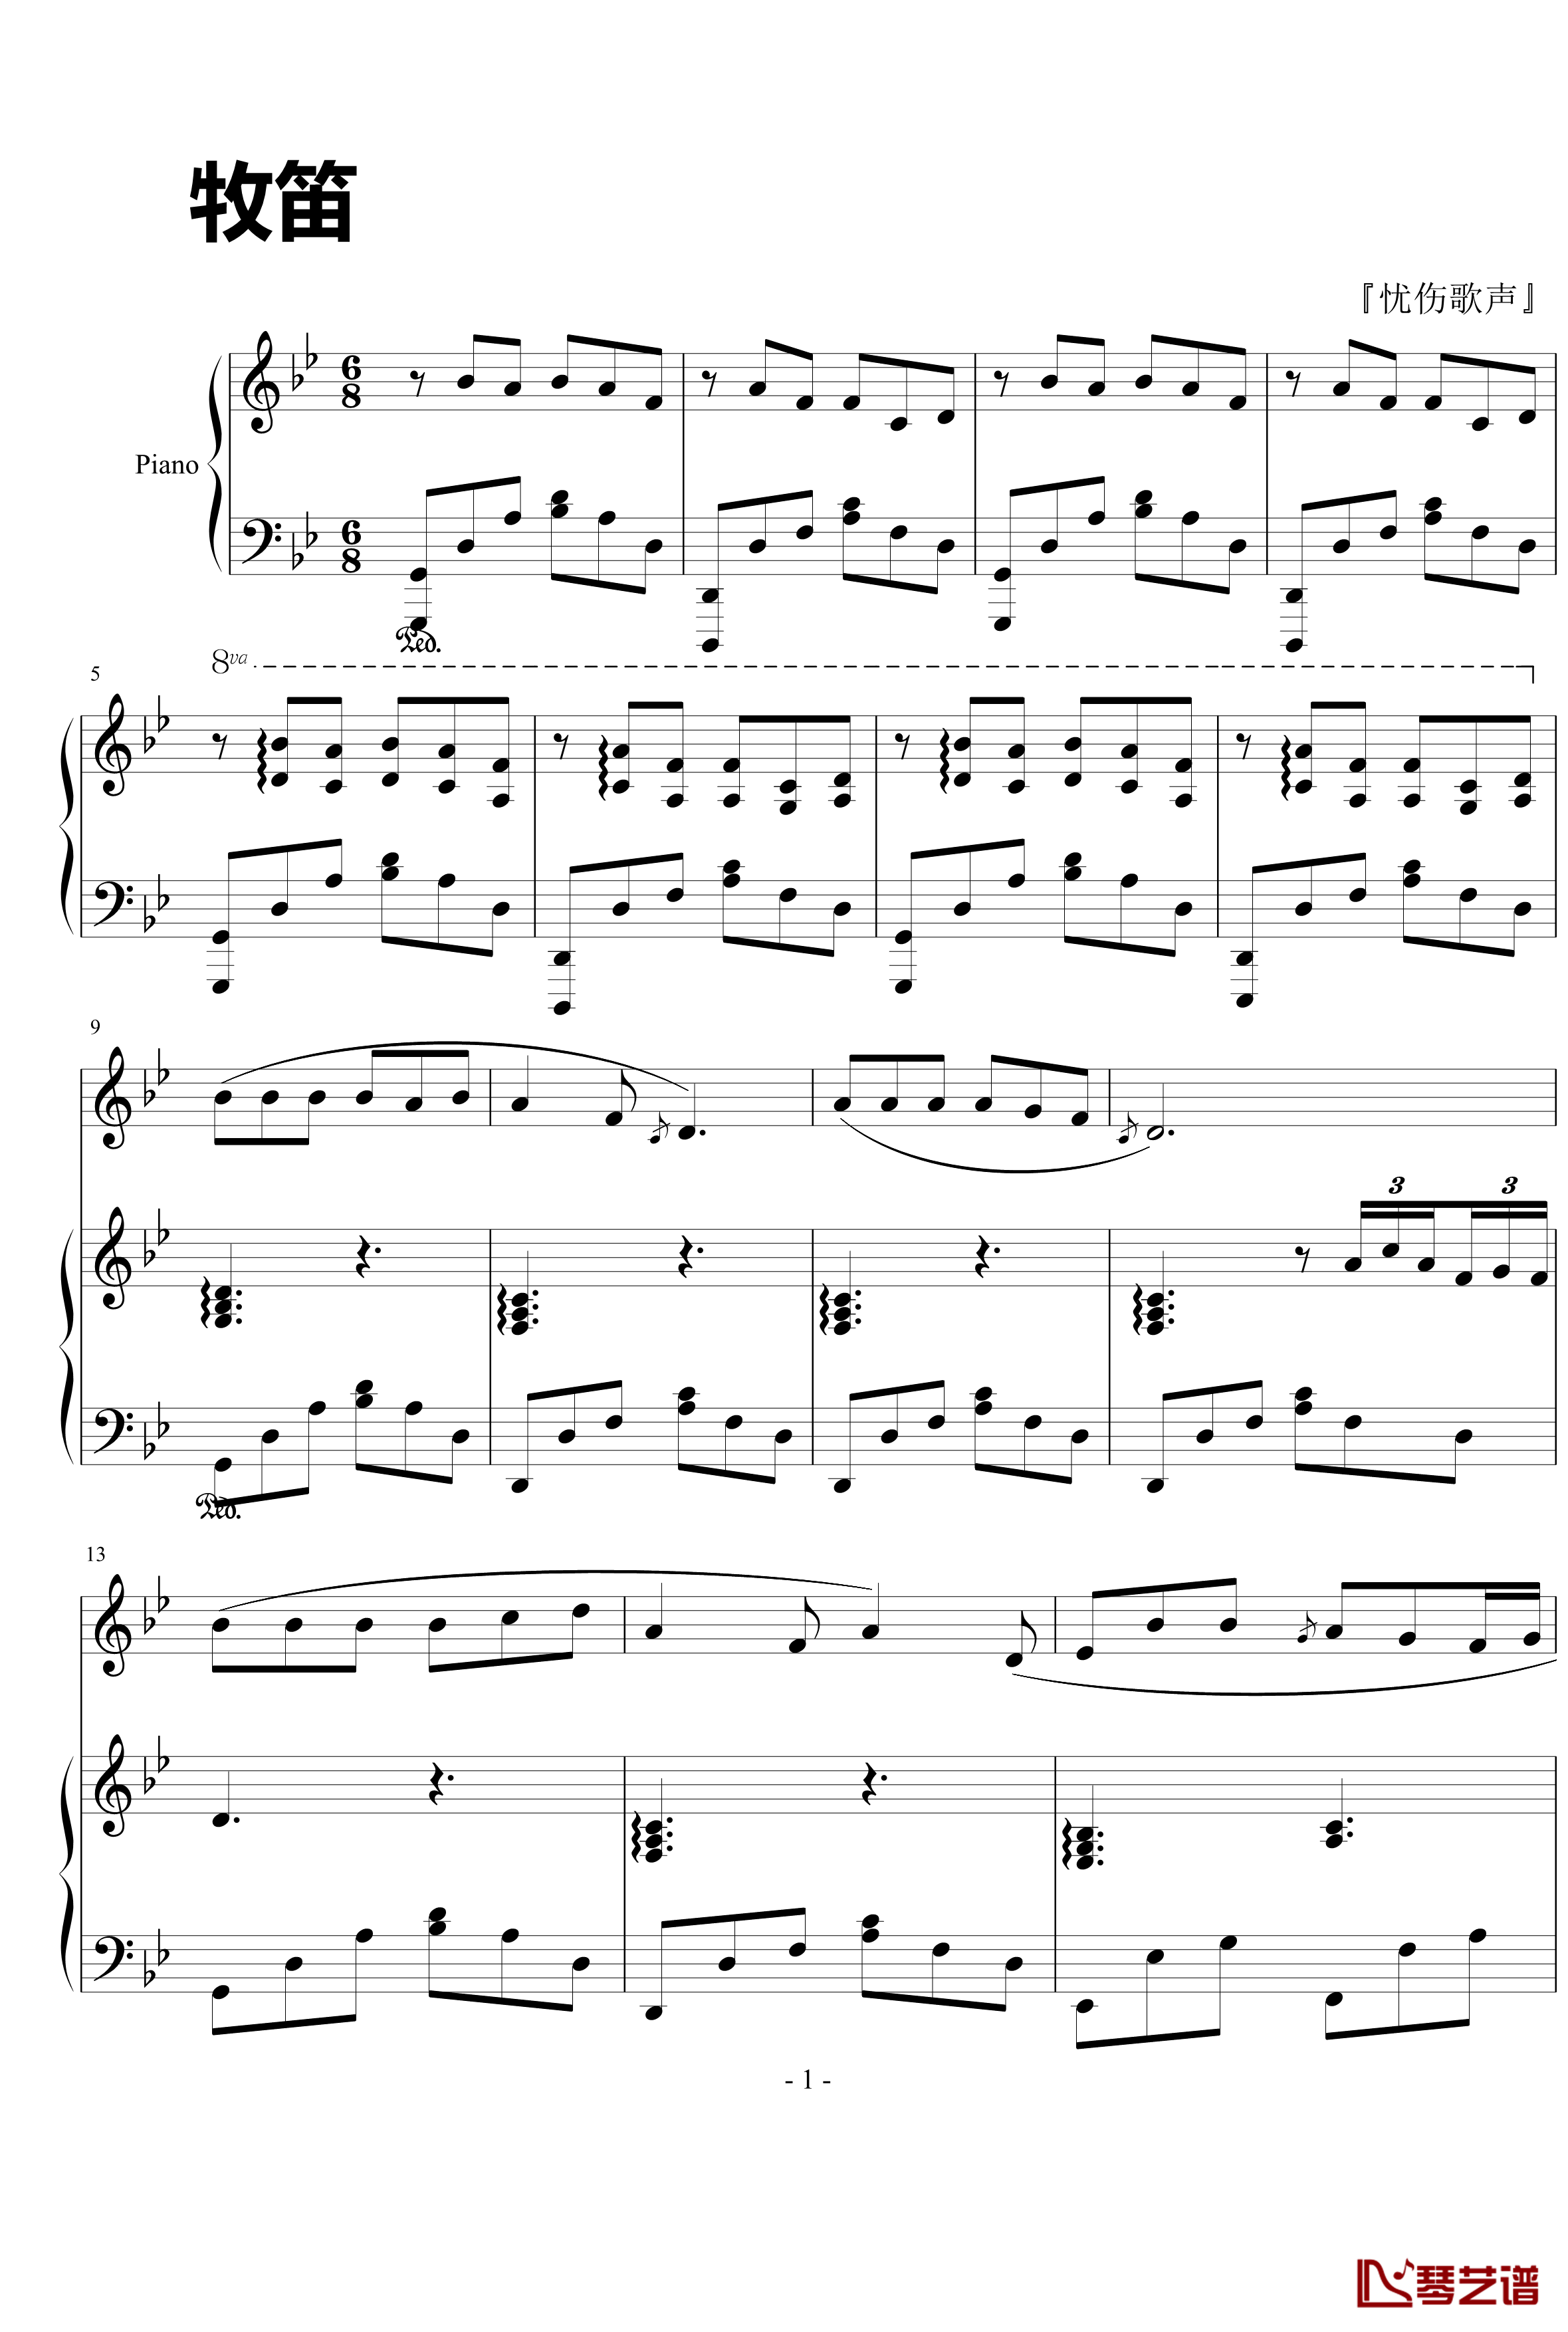 牧笛钢琴谱-忧伤歌声-刘德华1